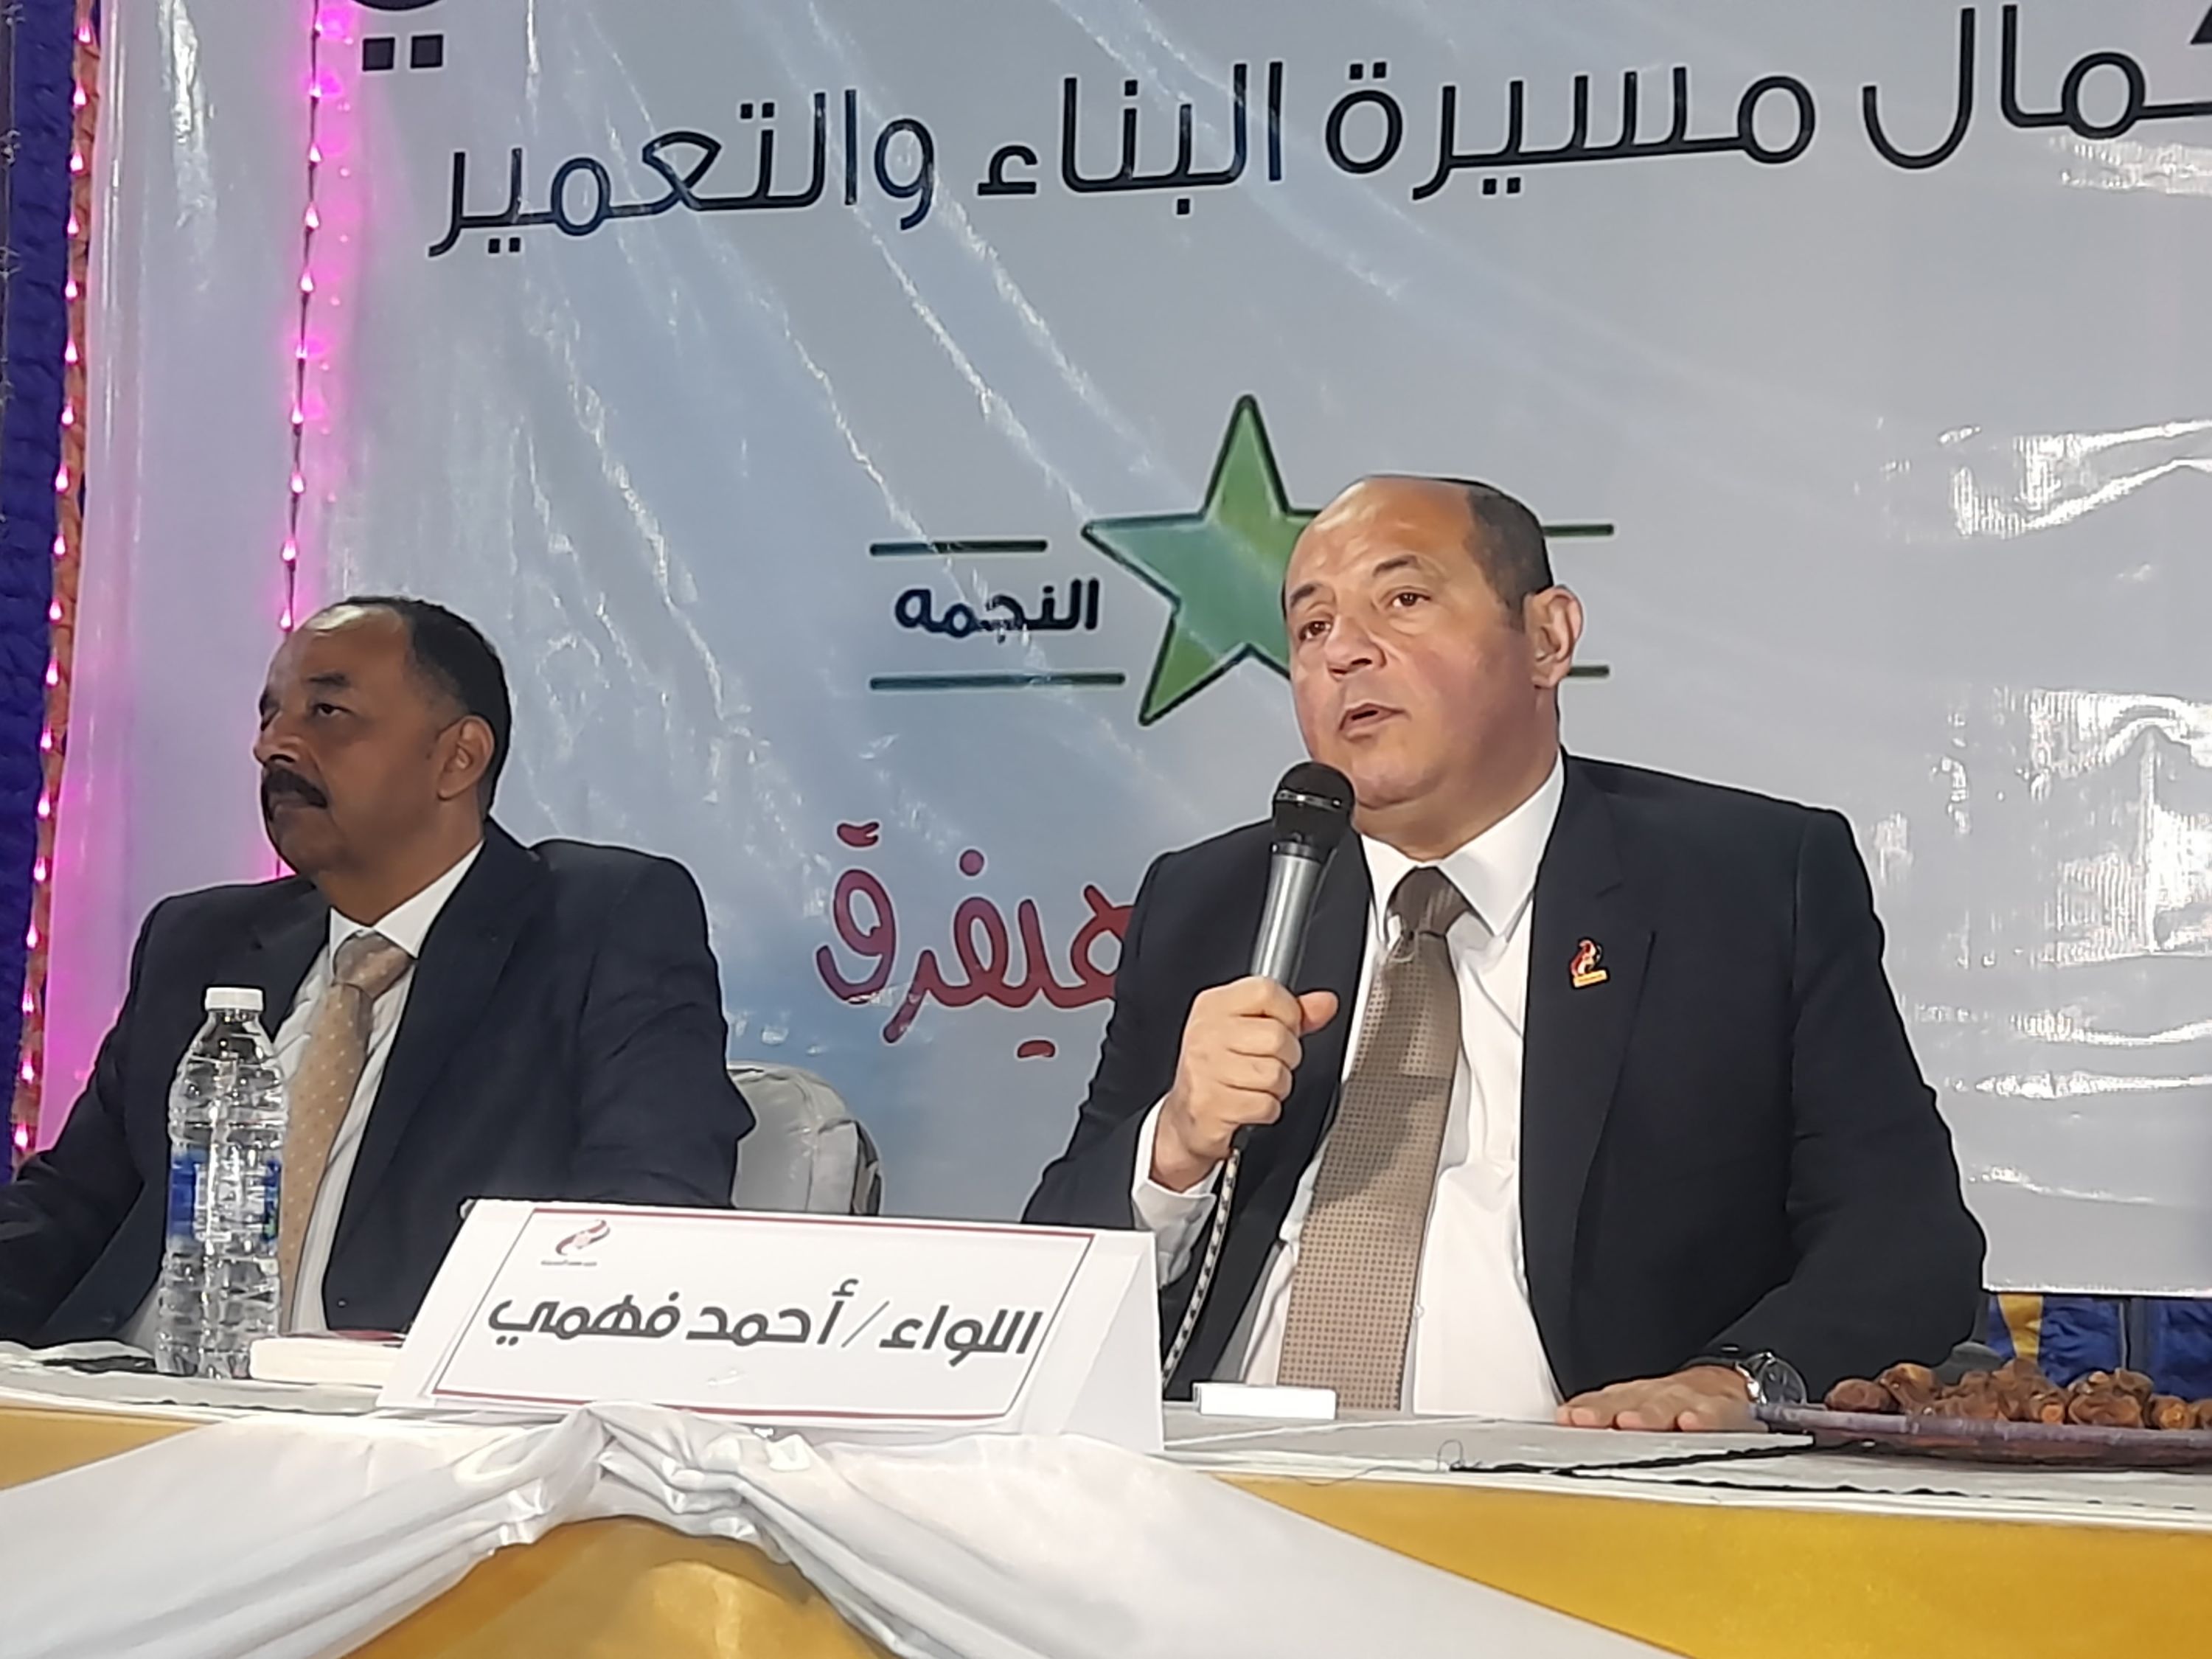 اللواء أحمد فهمى الأمين العام لحزب مصر الحديثة